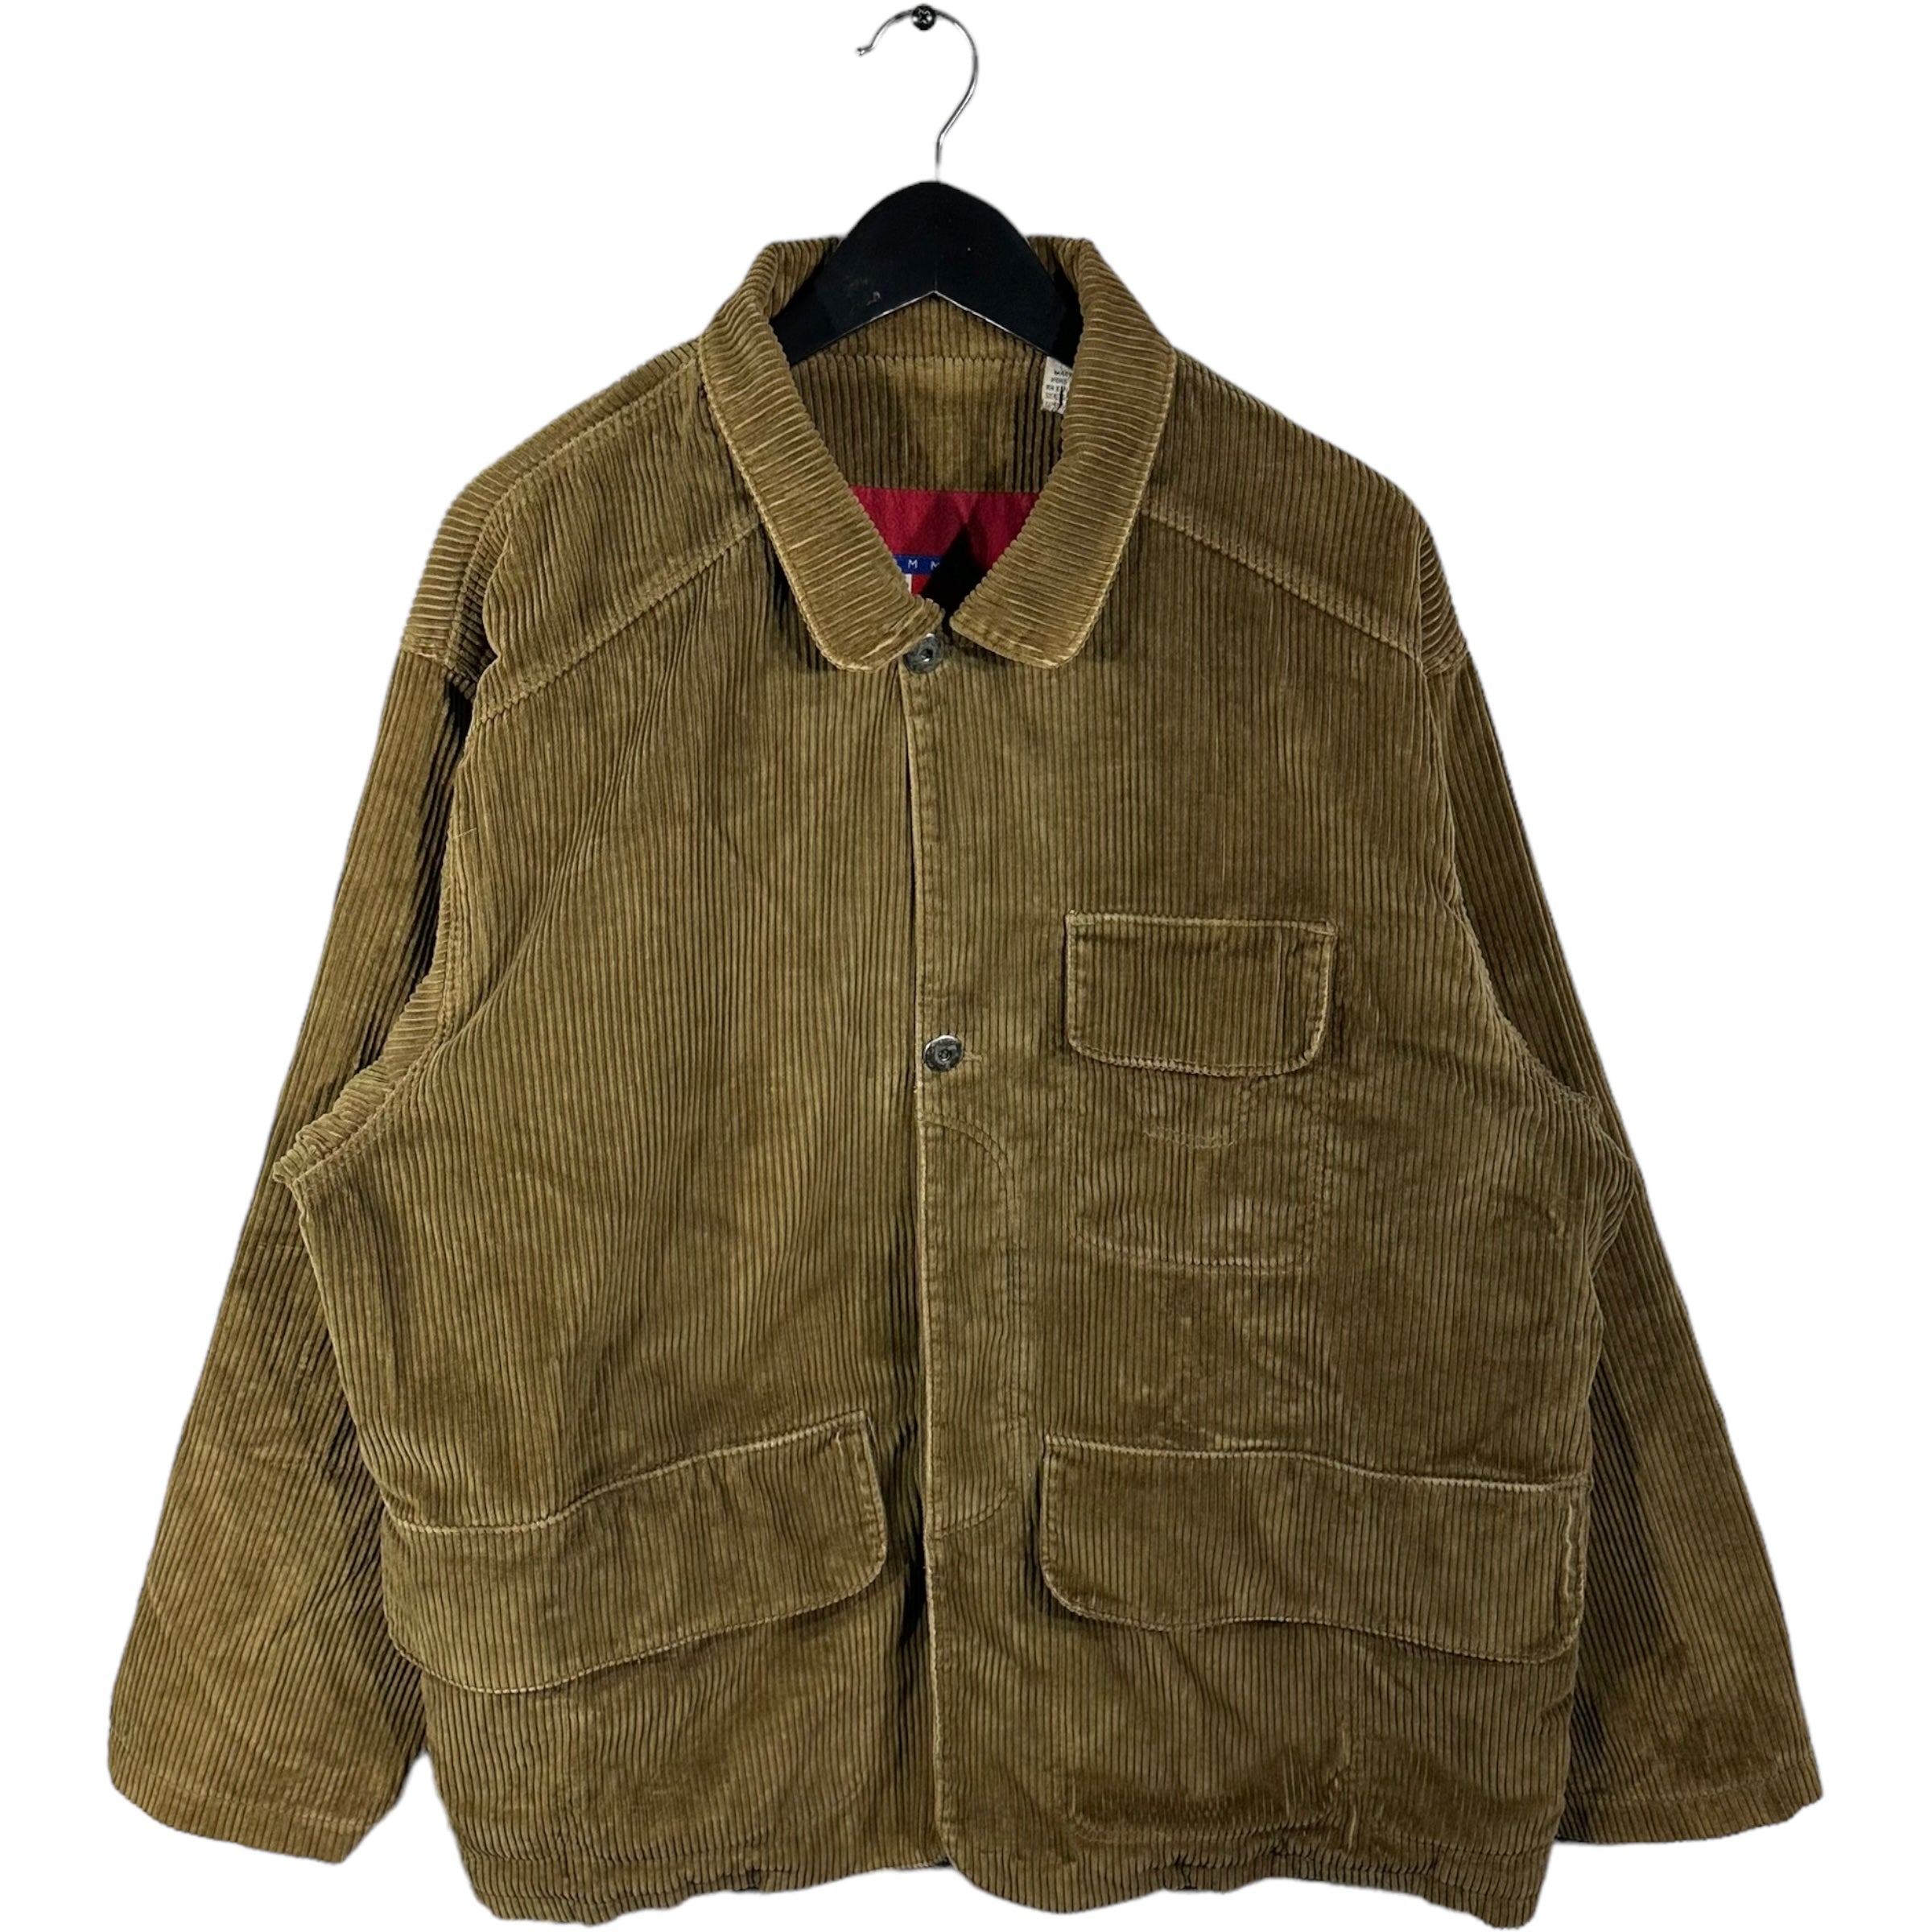 Vintage Tommy Hilfiger Corduroy Jacket